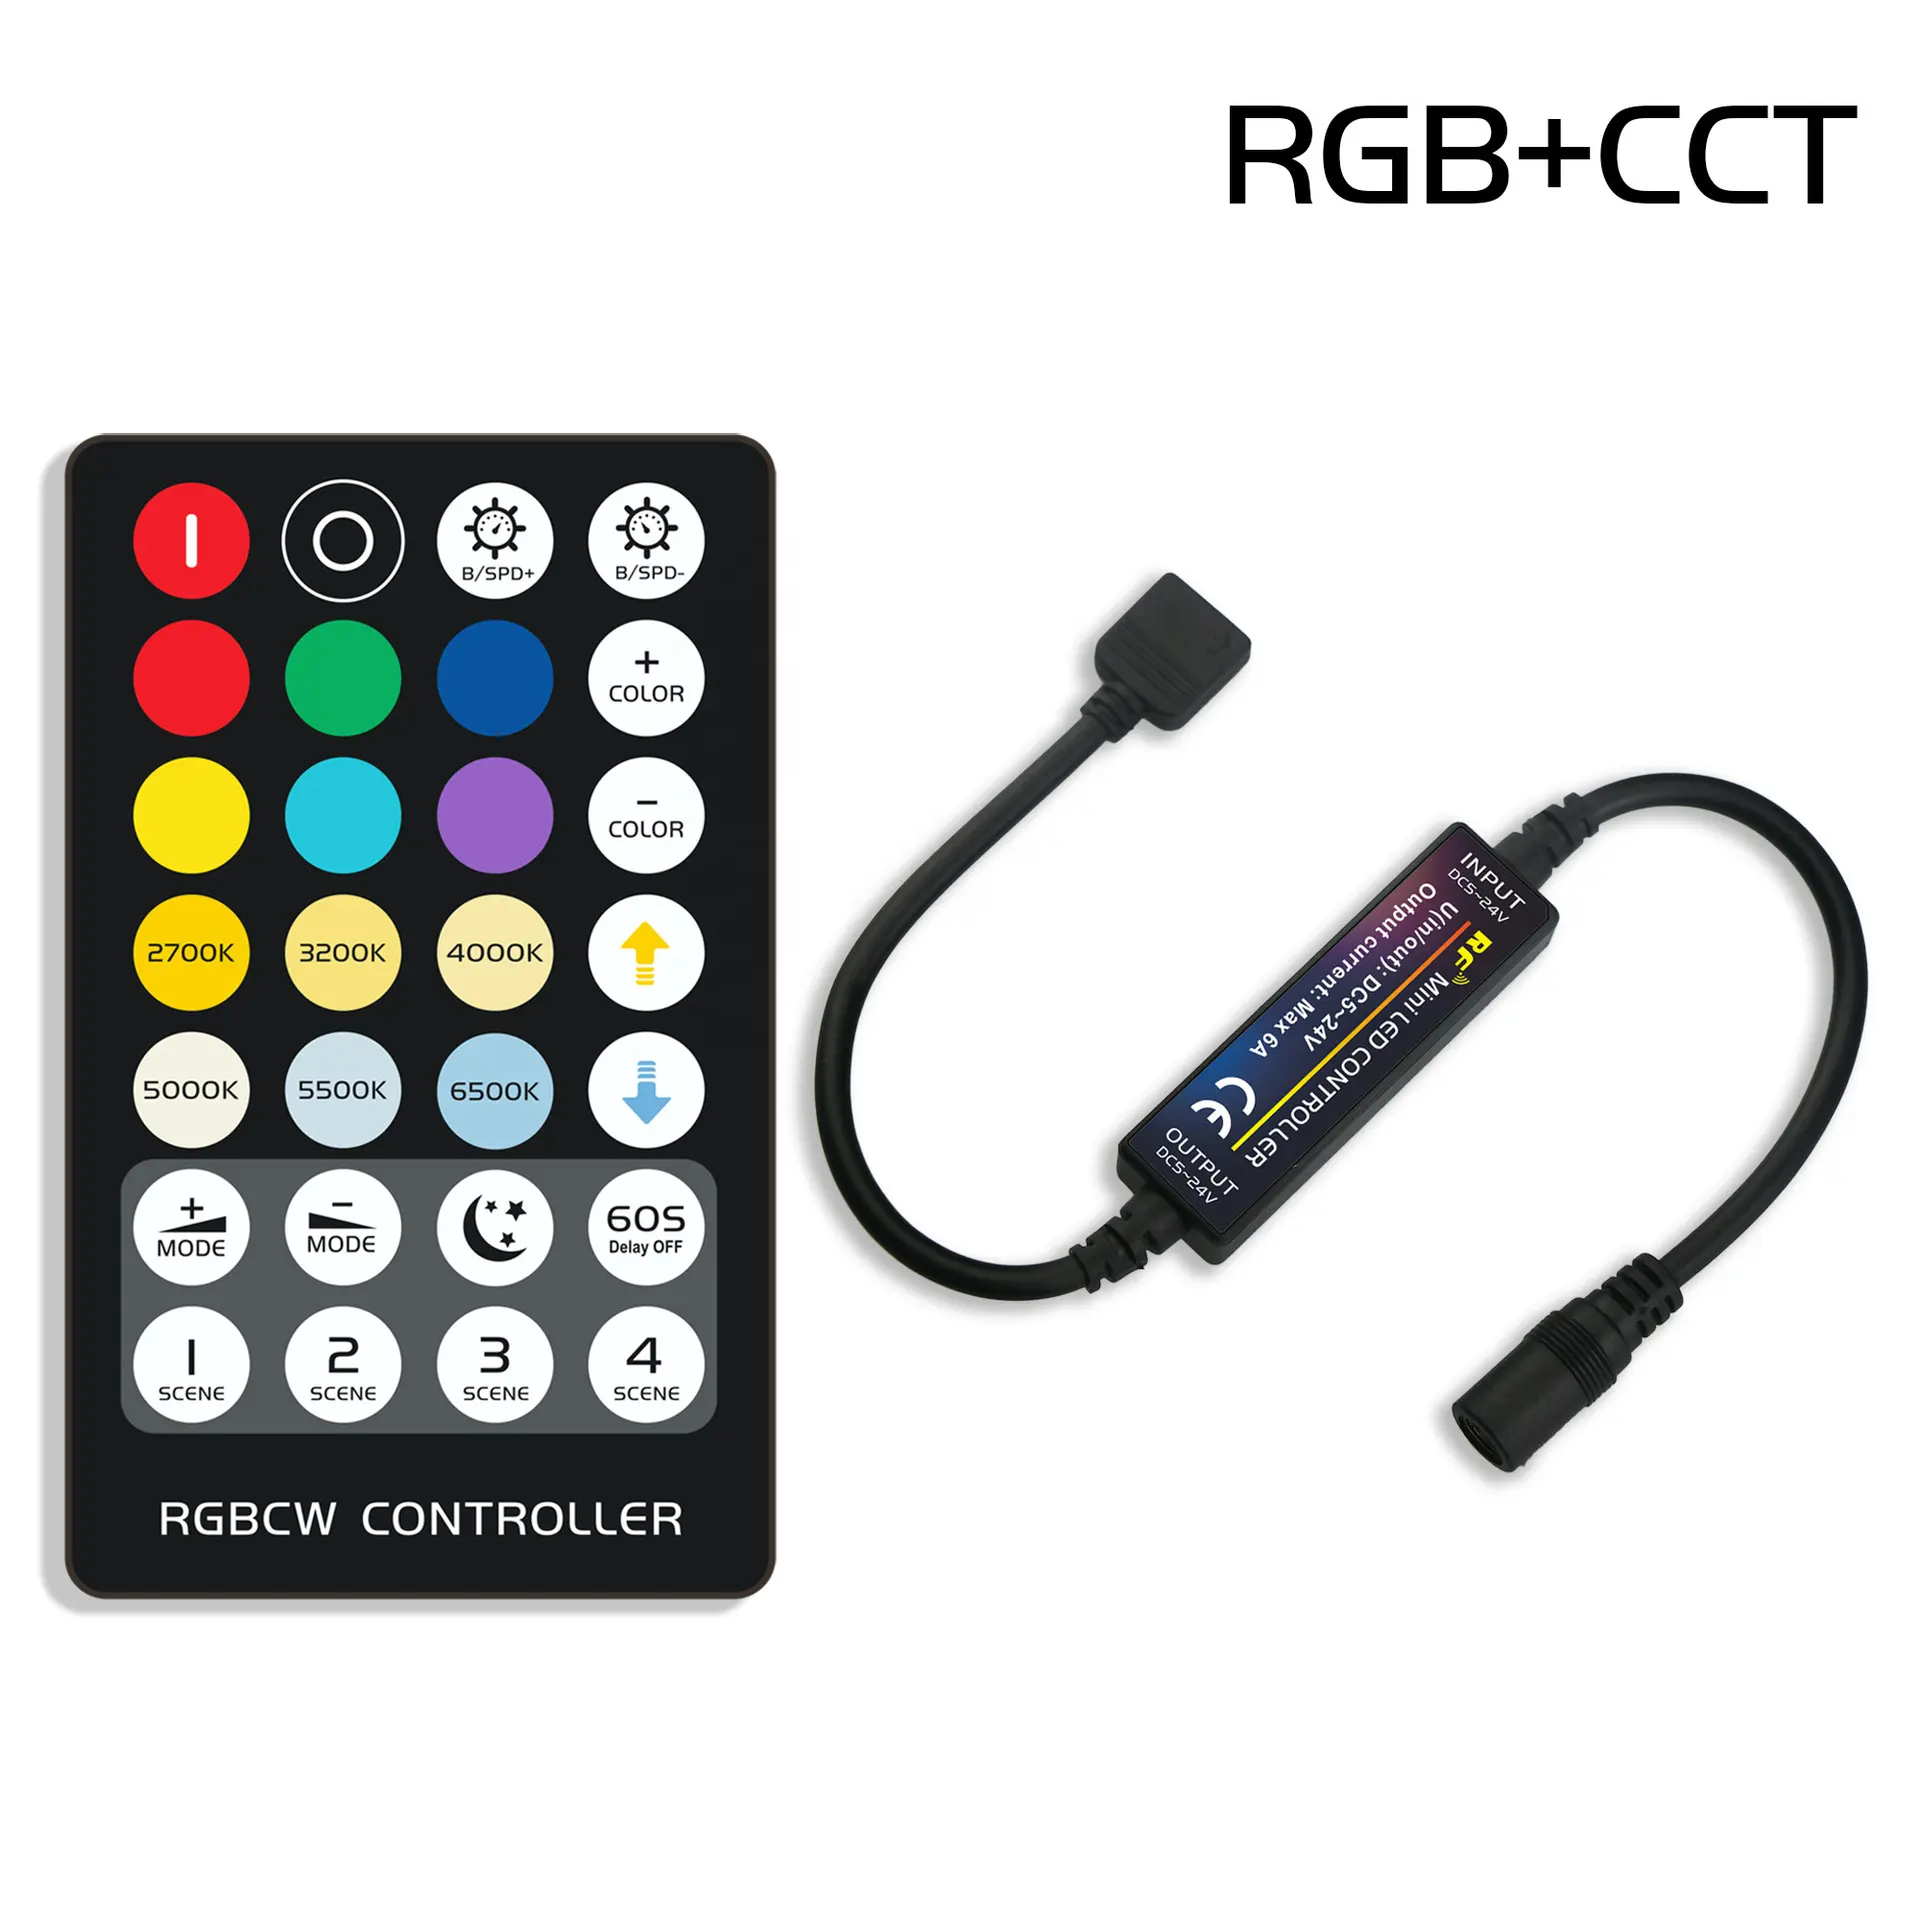 14/17/21/28คีย์ RF รีโมทคอนโทรล MINI LED สีเดียว/สีคู่/rb/rgbw/rgb/rgbcct คอนโทรลเลอร์สำหรับแถบไฟ LED